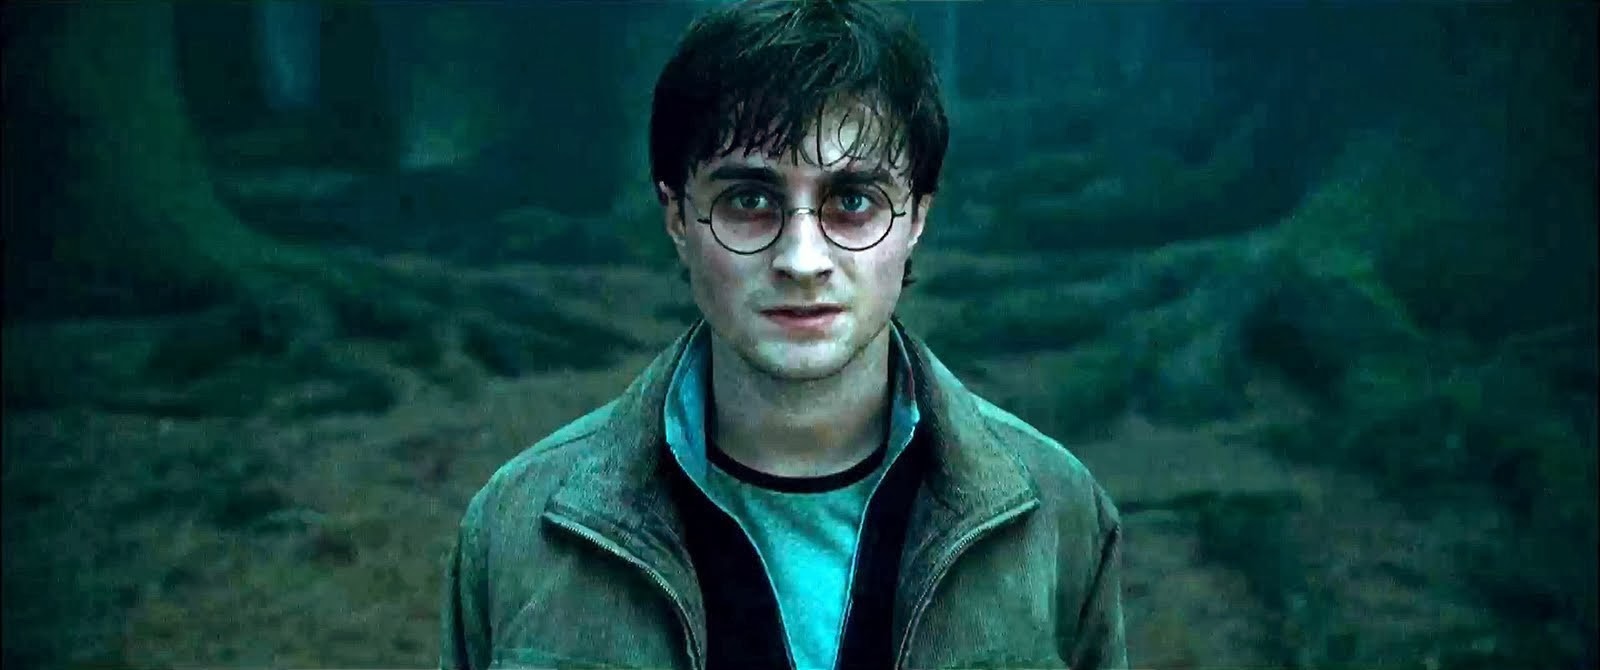 PeliCity: Ver Película Harry Potter y las Reliquias de la Muerte Parte - Harry Potter And The Deathly Hallows Part 2 Putlocker